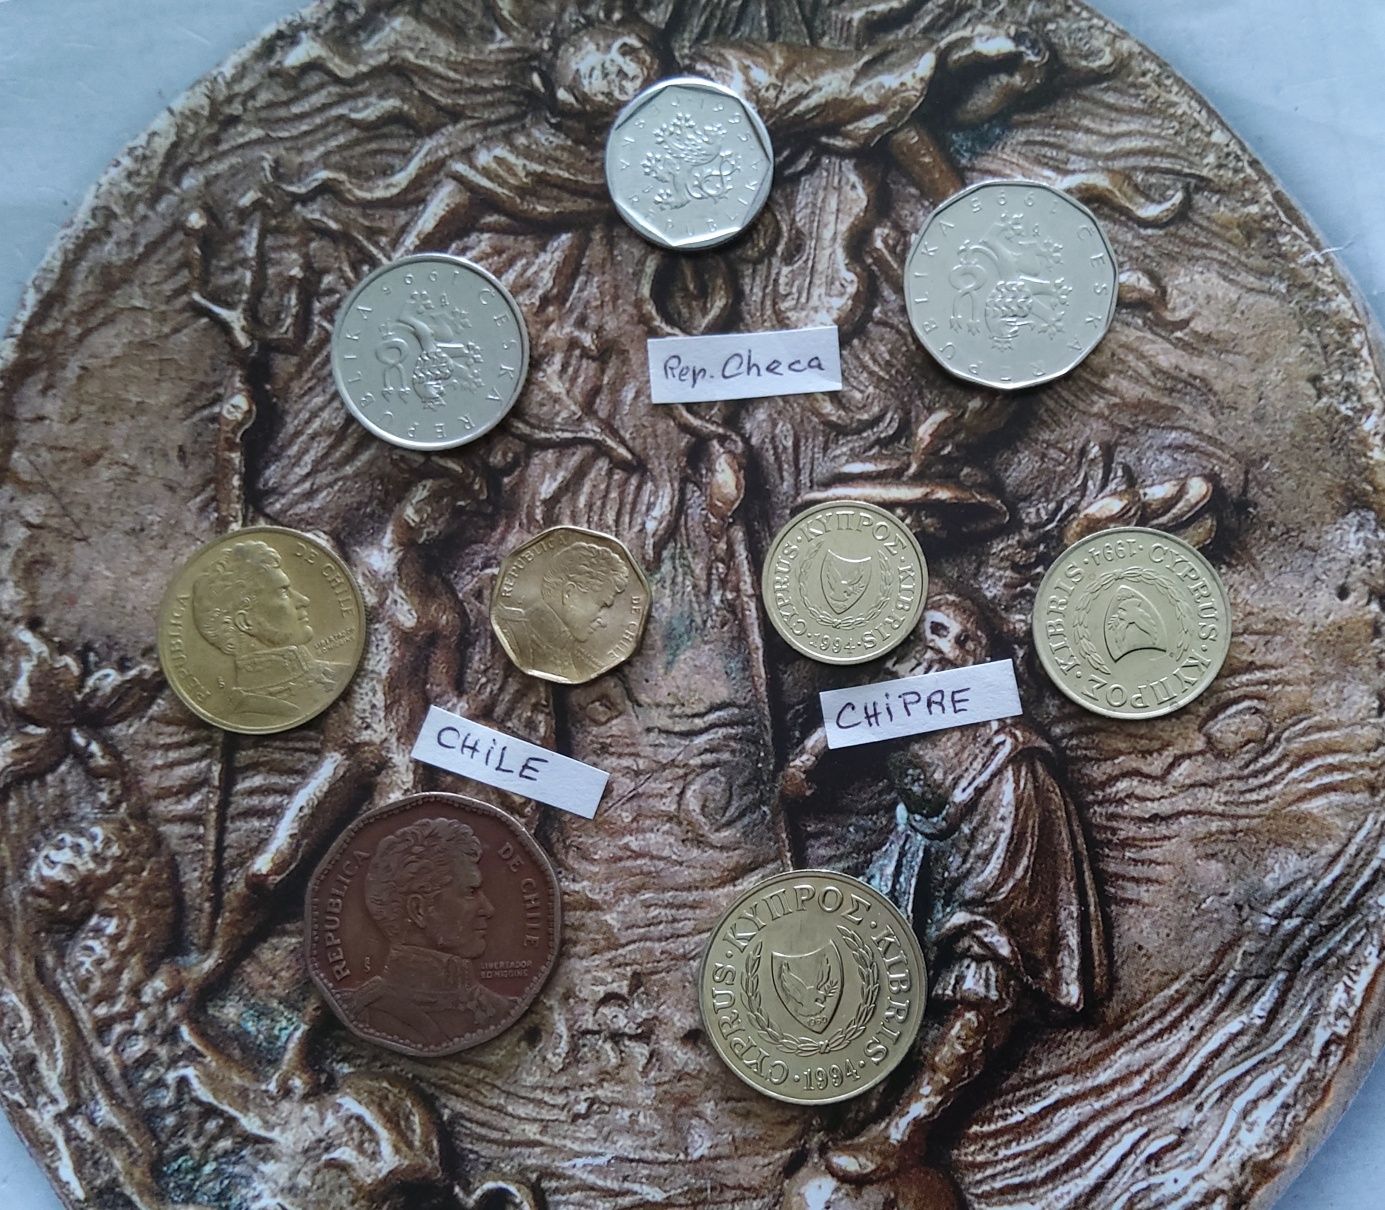 14524#Lote 9 moedas estrangeiras diferentes algumas unc
3 Chipre